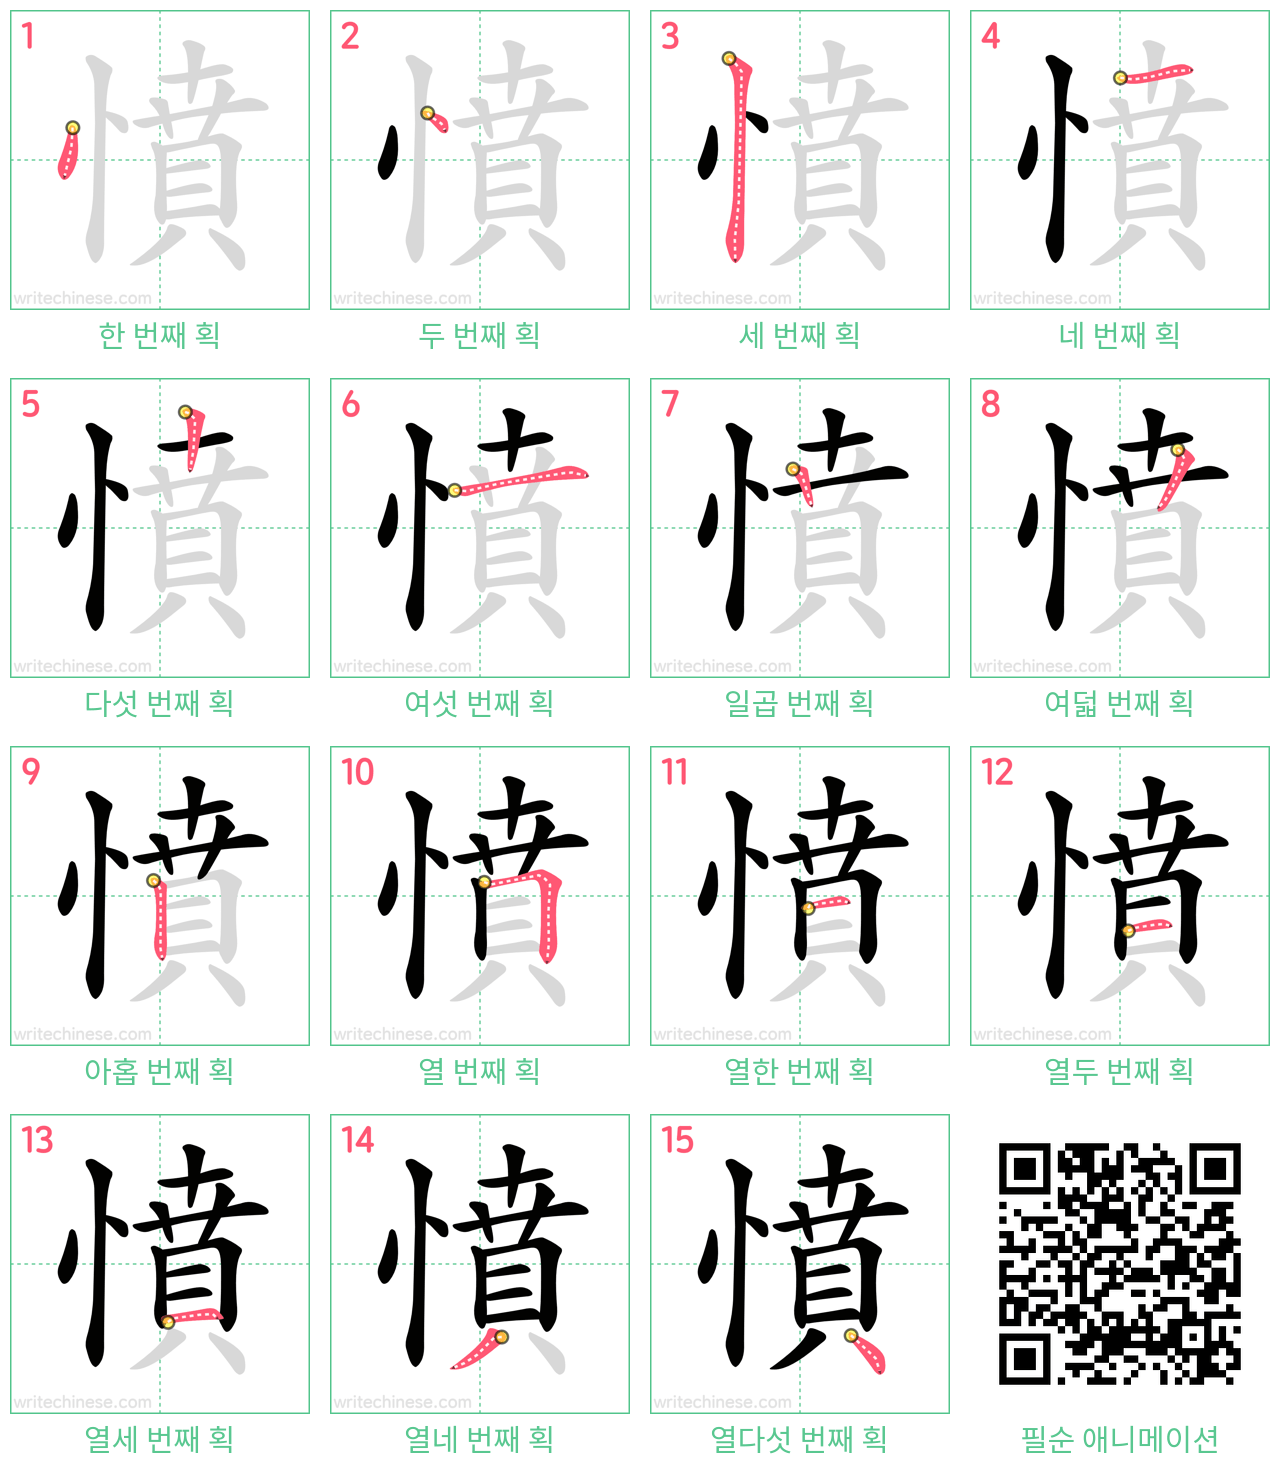 憤 step-by-step stroke order diagrams